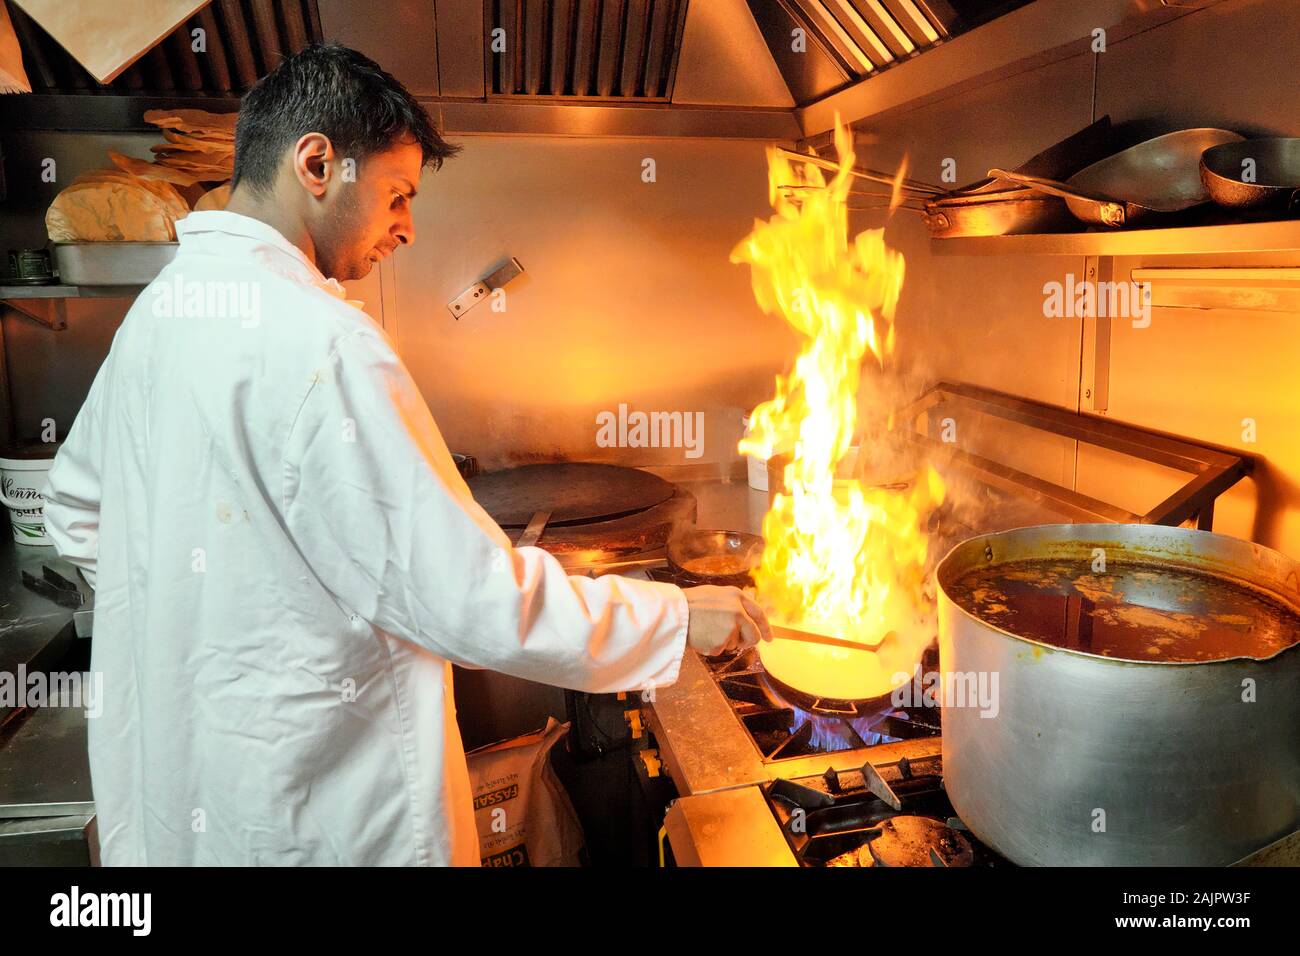 Küchenchef ein Balti mit hohen brennenden Flammen, Shababs Balti indischen Restaurant, Balti Triangle, Birmingham, West Midlands, England, Großbritannien, Europa Stockfoto